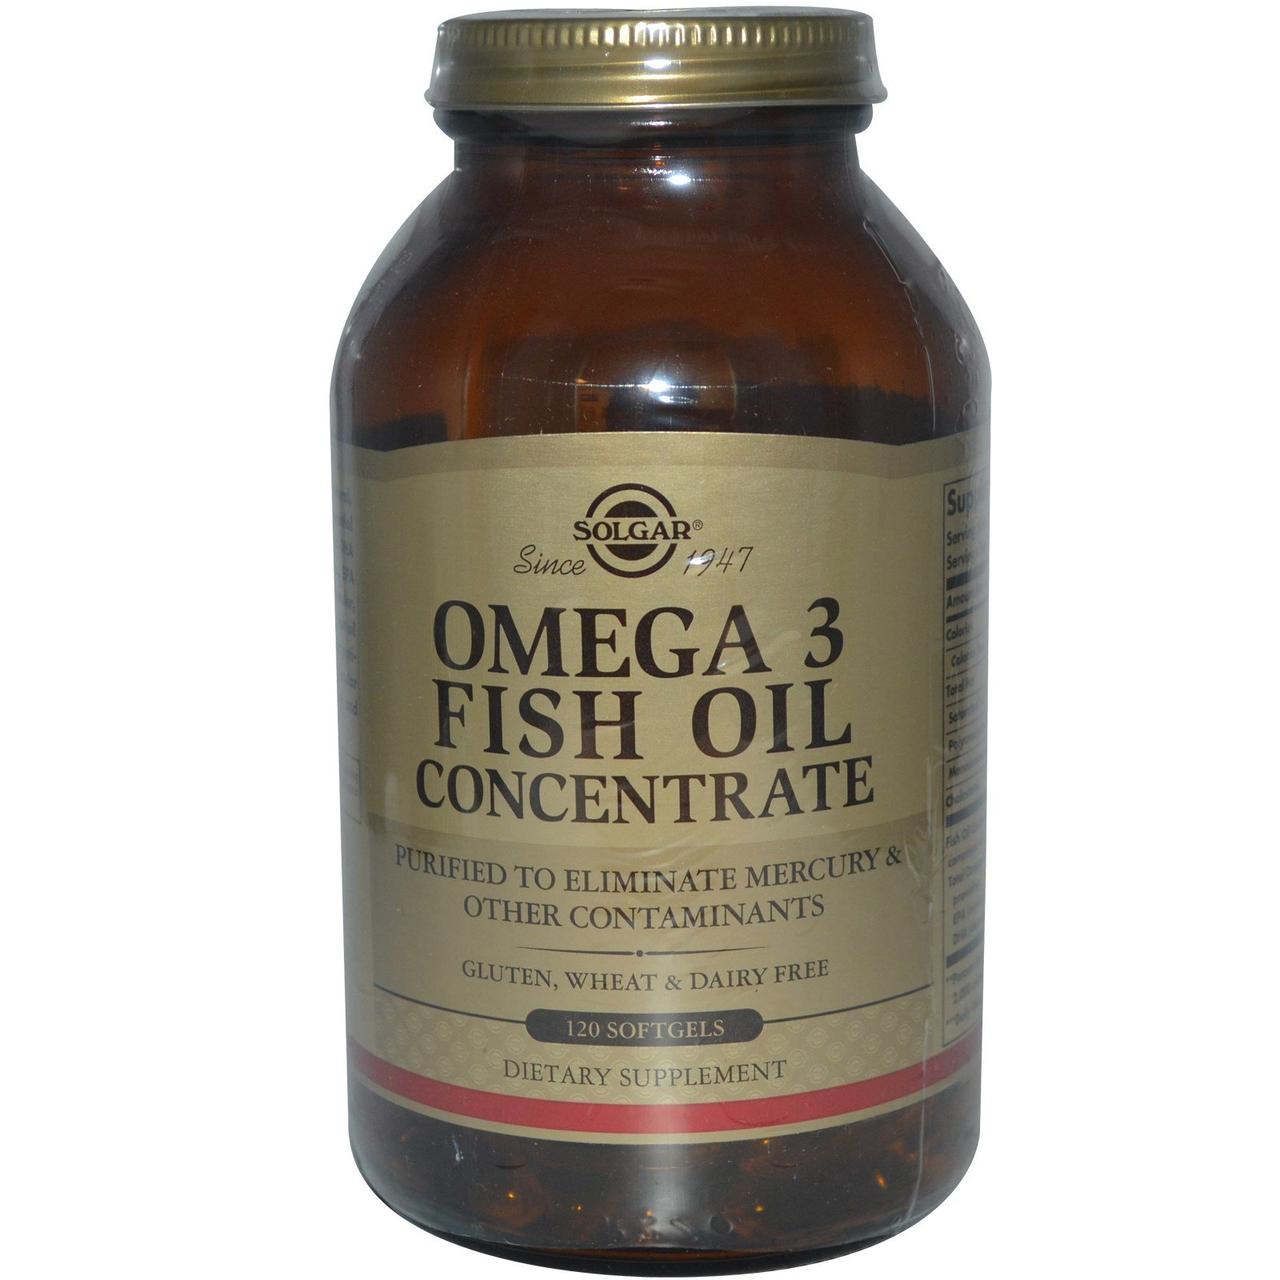 Omega-3 Fish Oil Concentrate Solgar 120 Softgels,  мл, Solgar. Омега 3 (Рыбий жир). Поддержание здоровья Укрепление суставов и связок Здоровье кожи Профилактика ССЗ Противовоспалительные свойства 